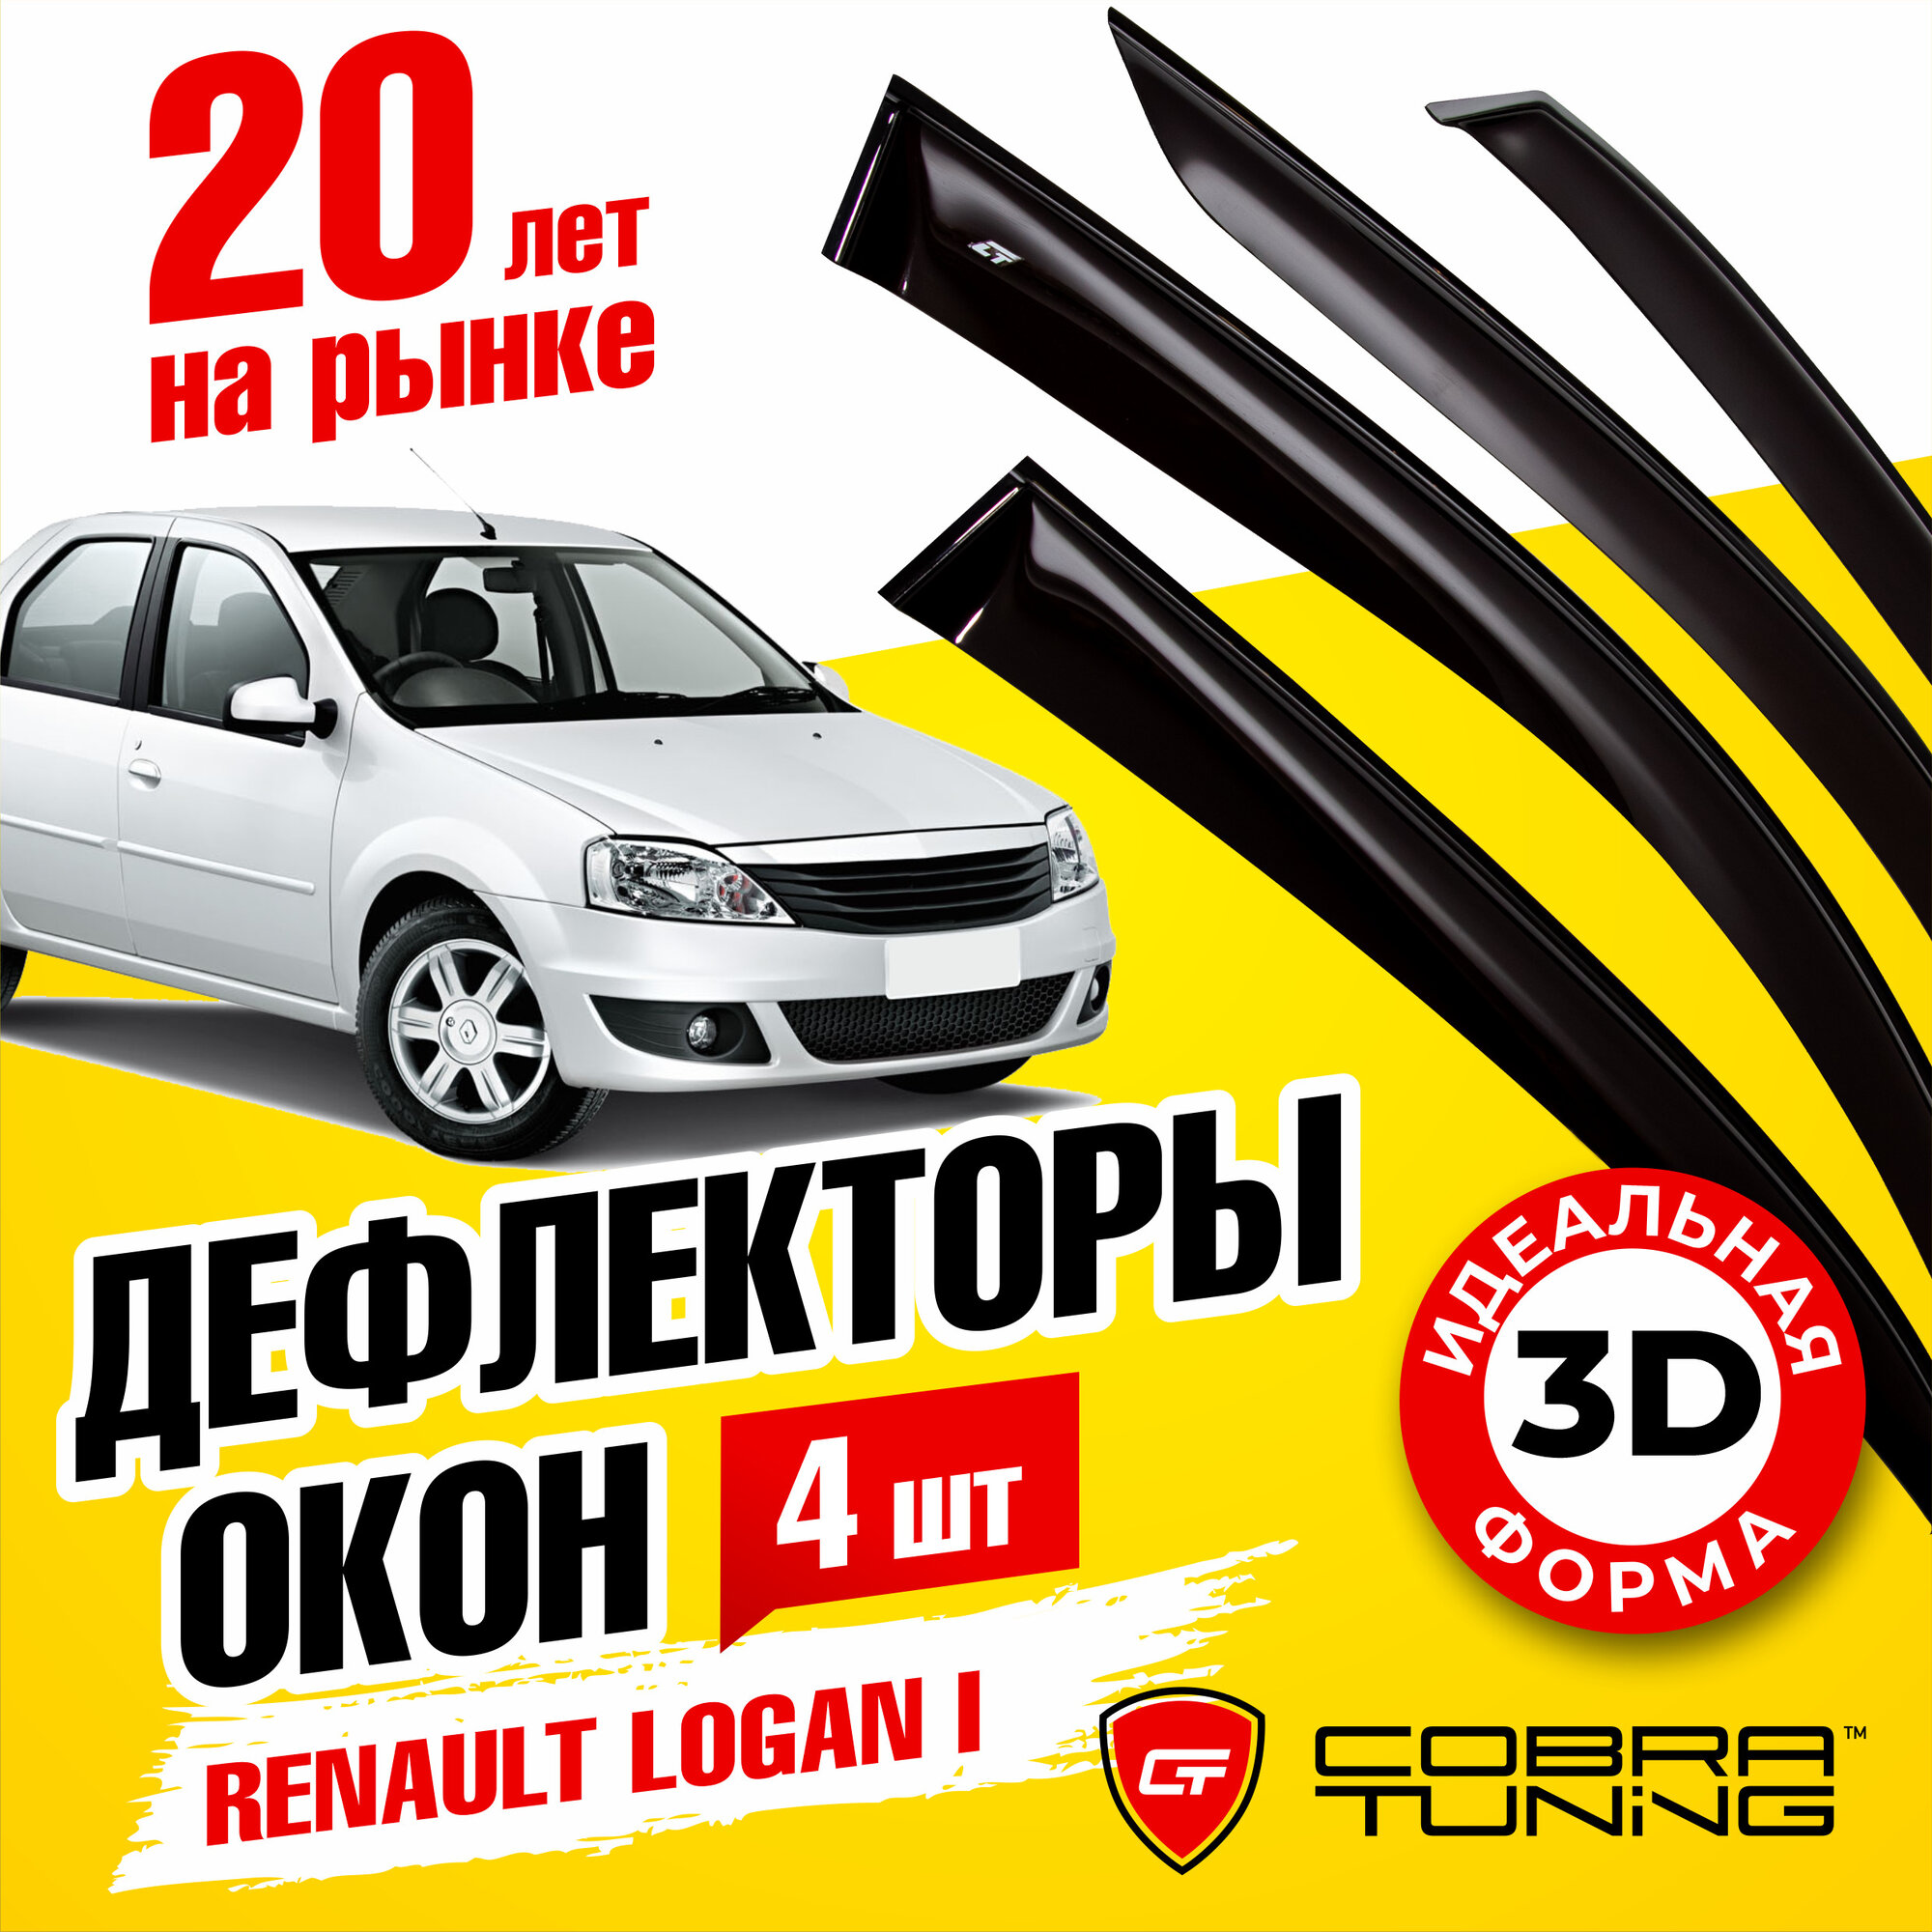 Дефлекторы боковых окон для Renault Logan I (Рено Логан 1) седан 2005-2014, ветровики на двери автомобиля, Cobra Tuning